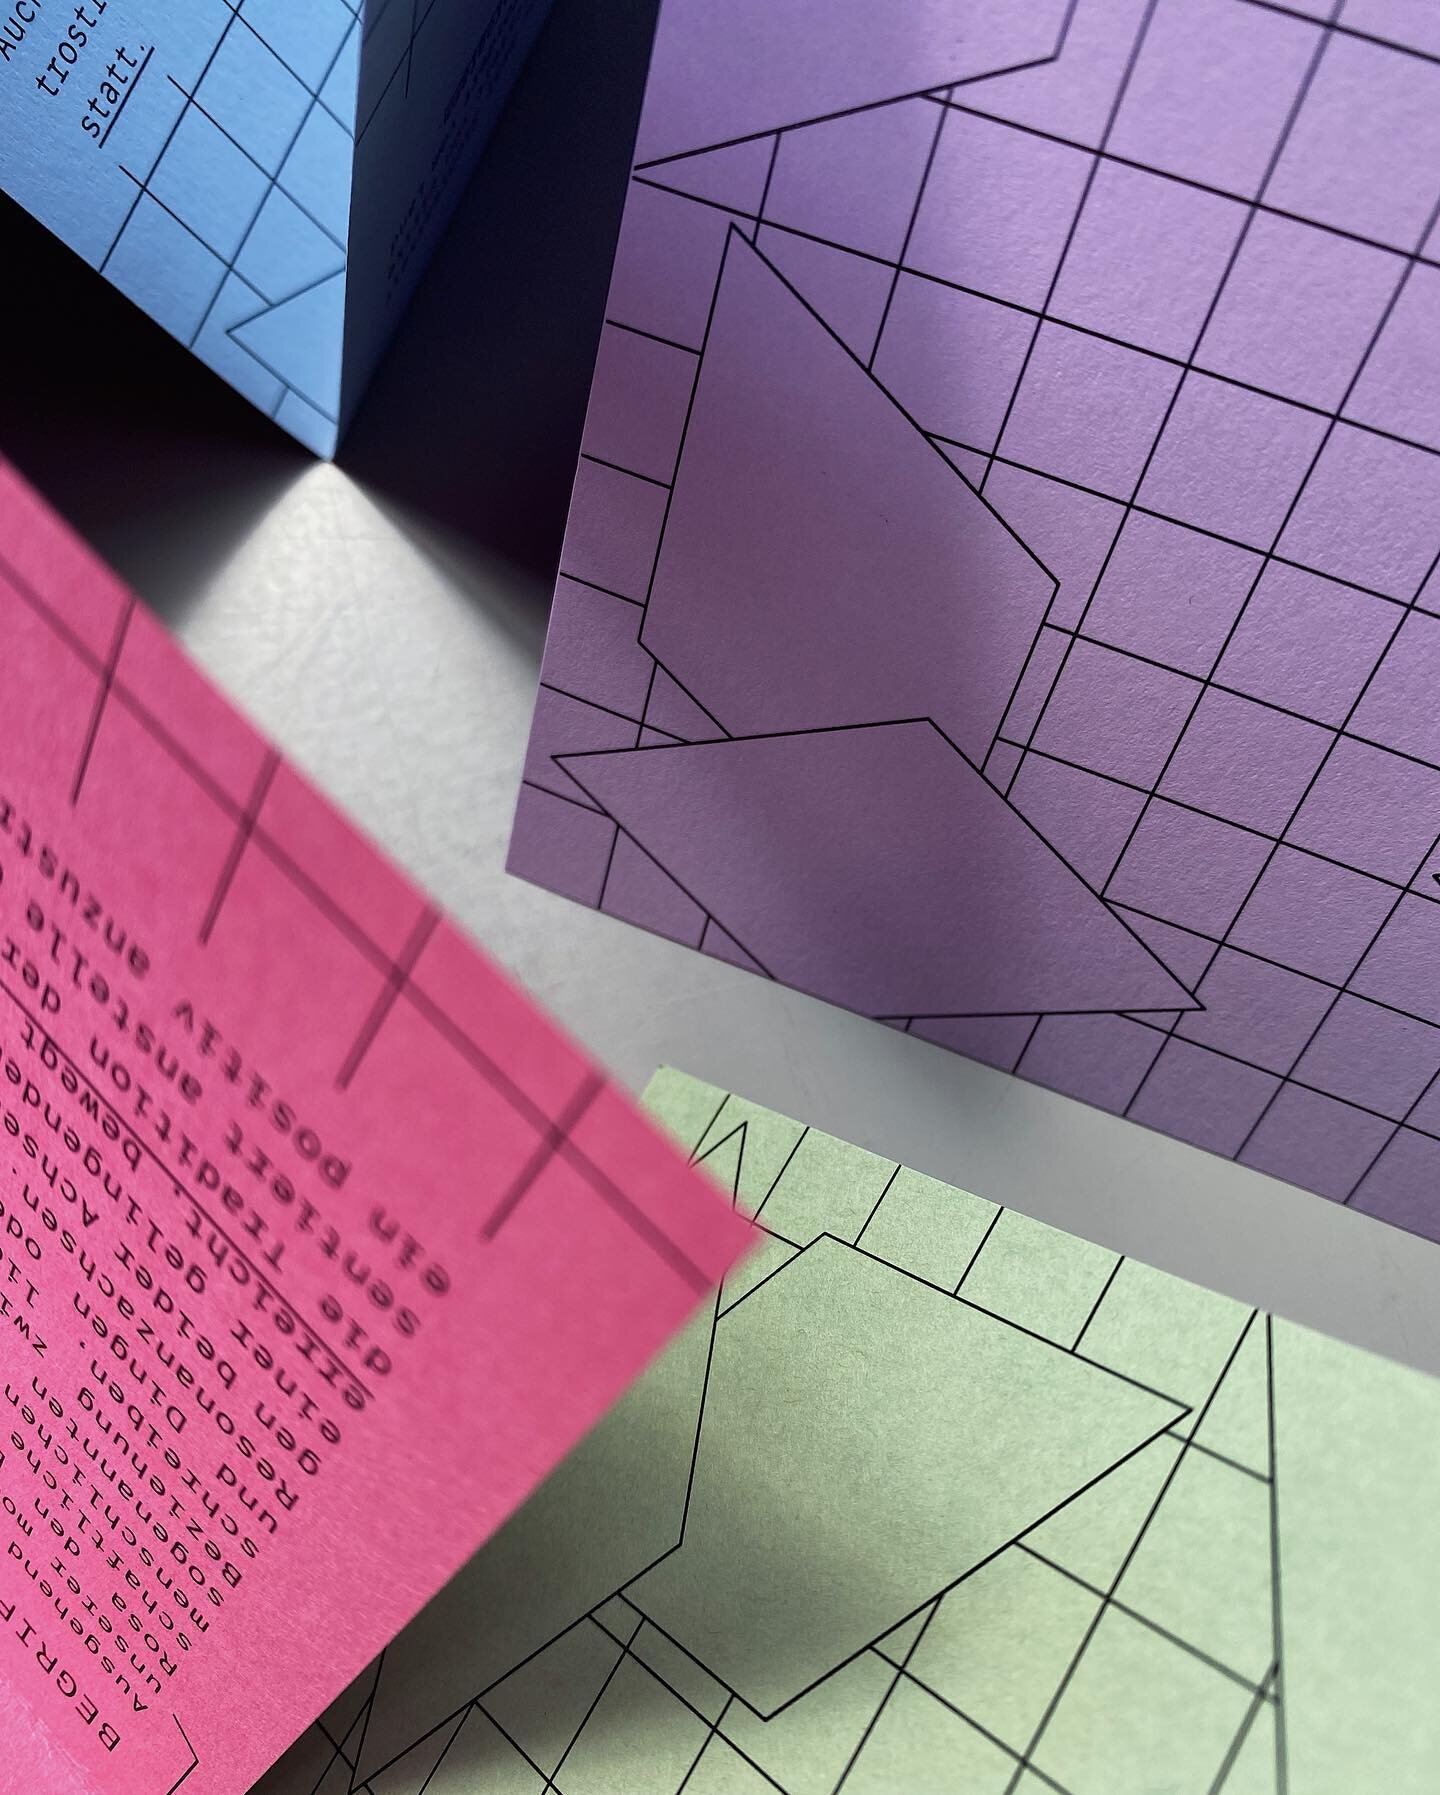 Liebe diese Farbkombi. Und die Linien. Und das Projekt, an dem ich gerade arbeite. Bald mehr. 

___
#ichhassecliffhanger #ilovegraphicdesign #graphicdesign #paper #typography #colour #newprojectsoon